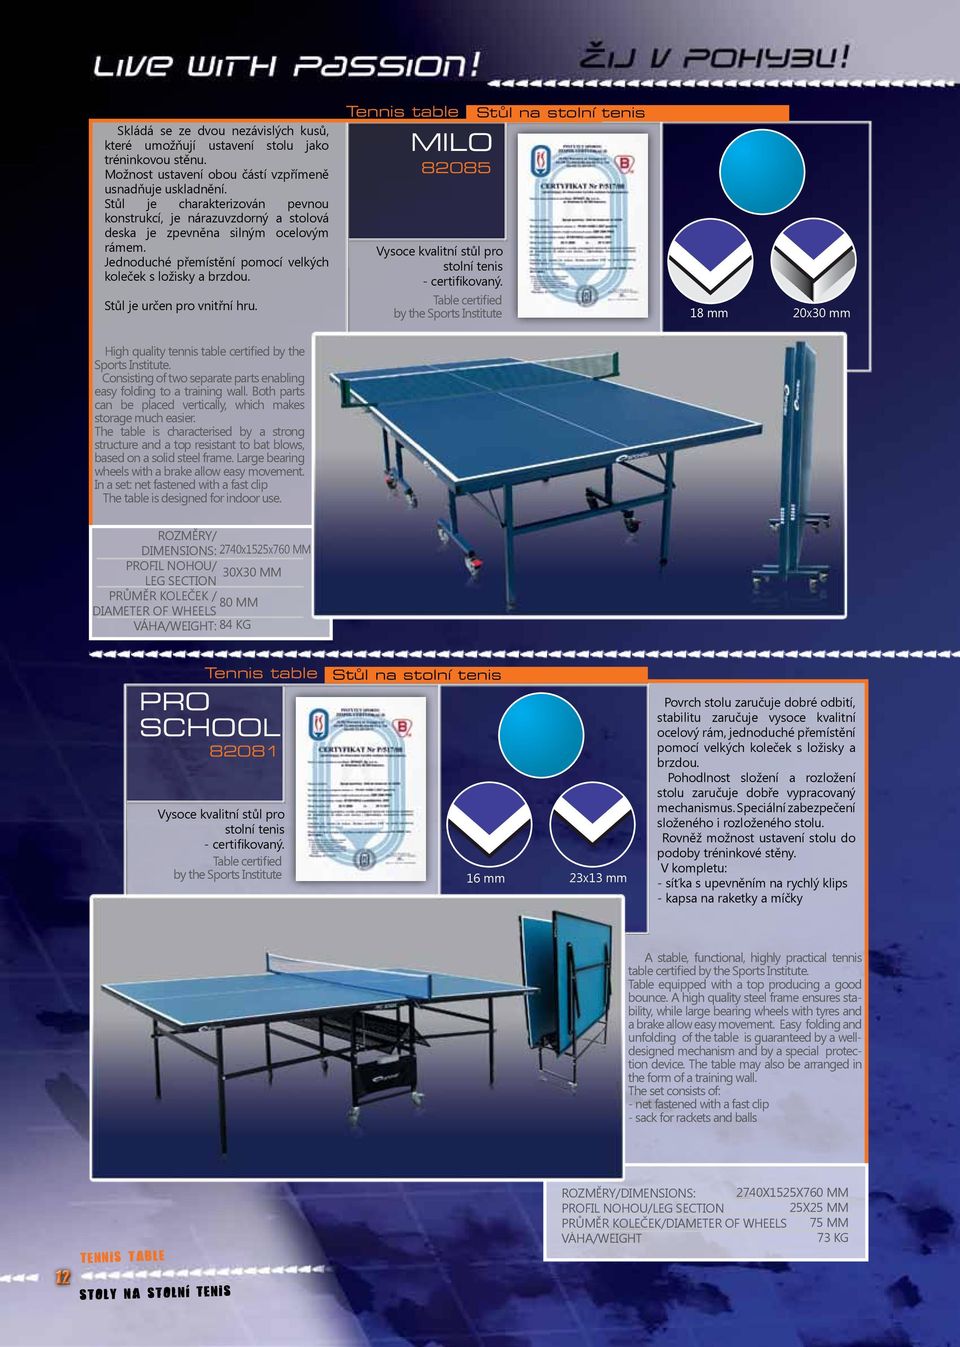 Stůl je určen pro vnitřní hru. Tennis table MILO 82085 Vysoce kvalitní stůl pro stolní tenis - certifikovaný.